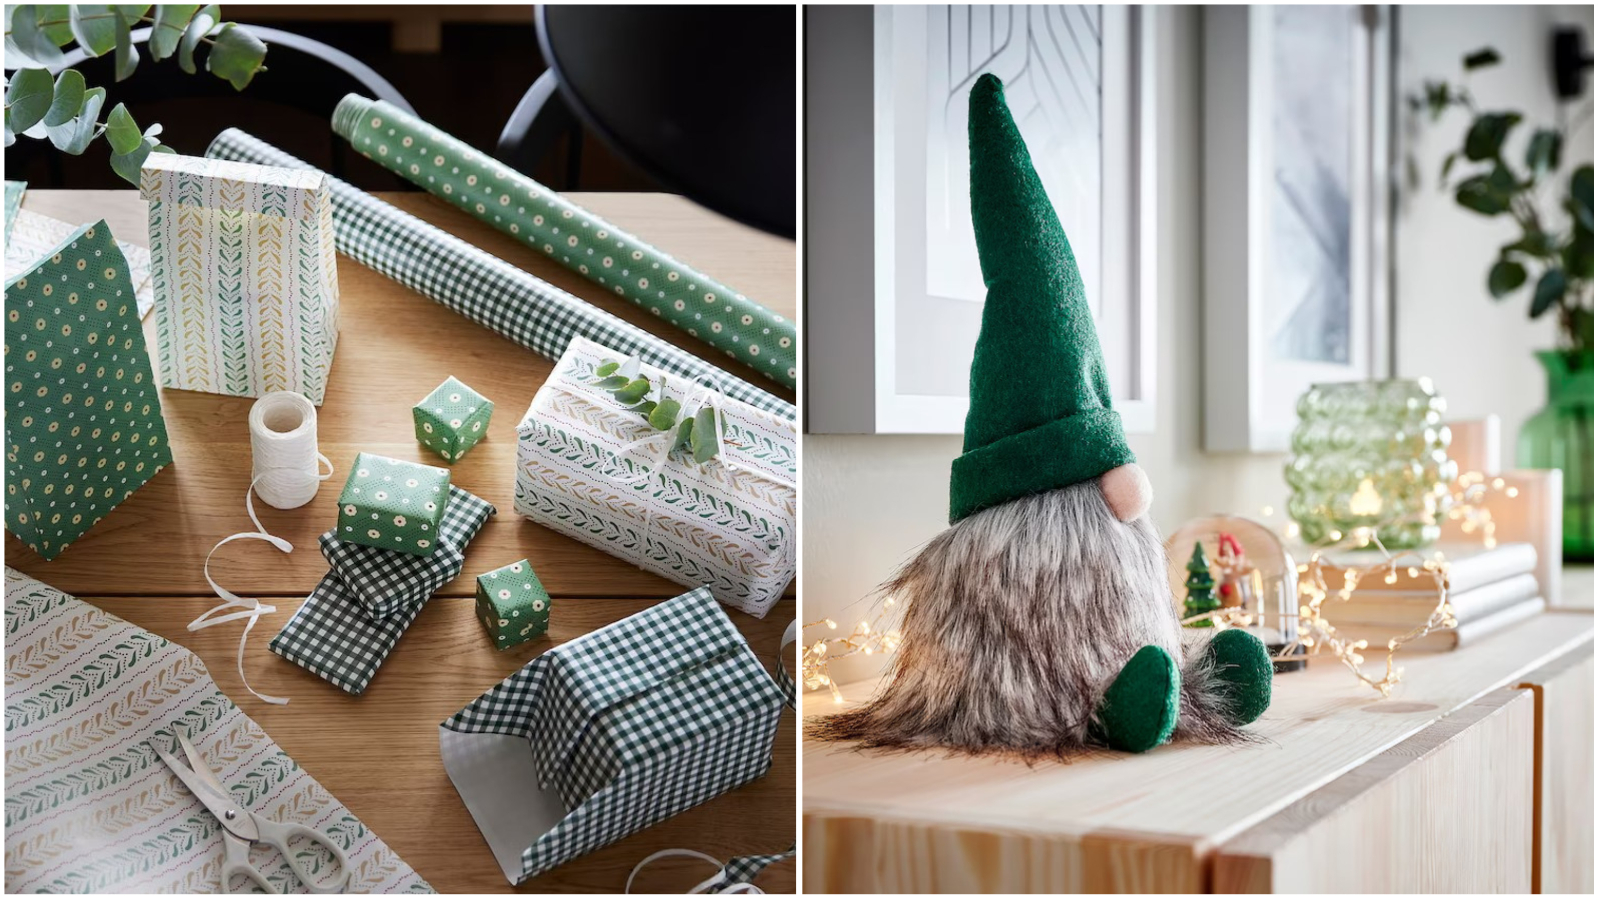 IKEA je otkrila svoj božićni shop, a u njemu možete pronaći sve za blagdane